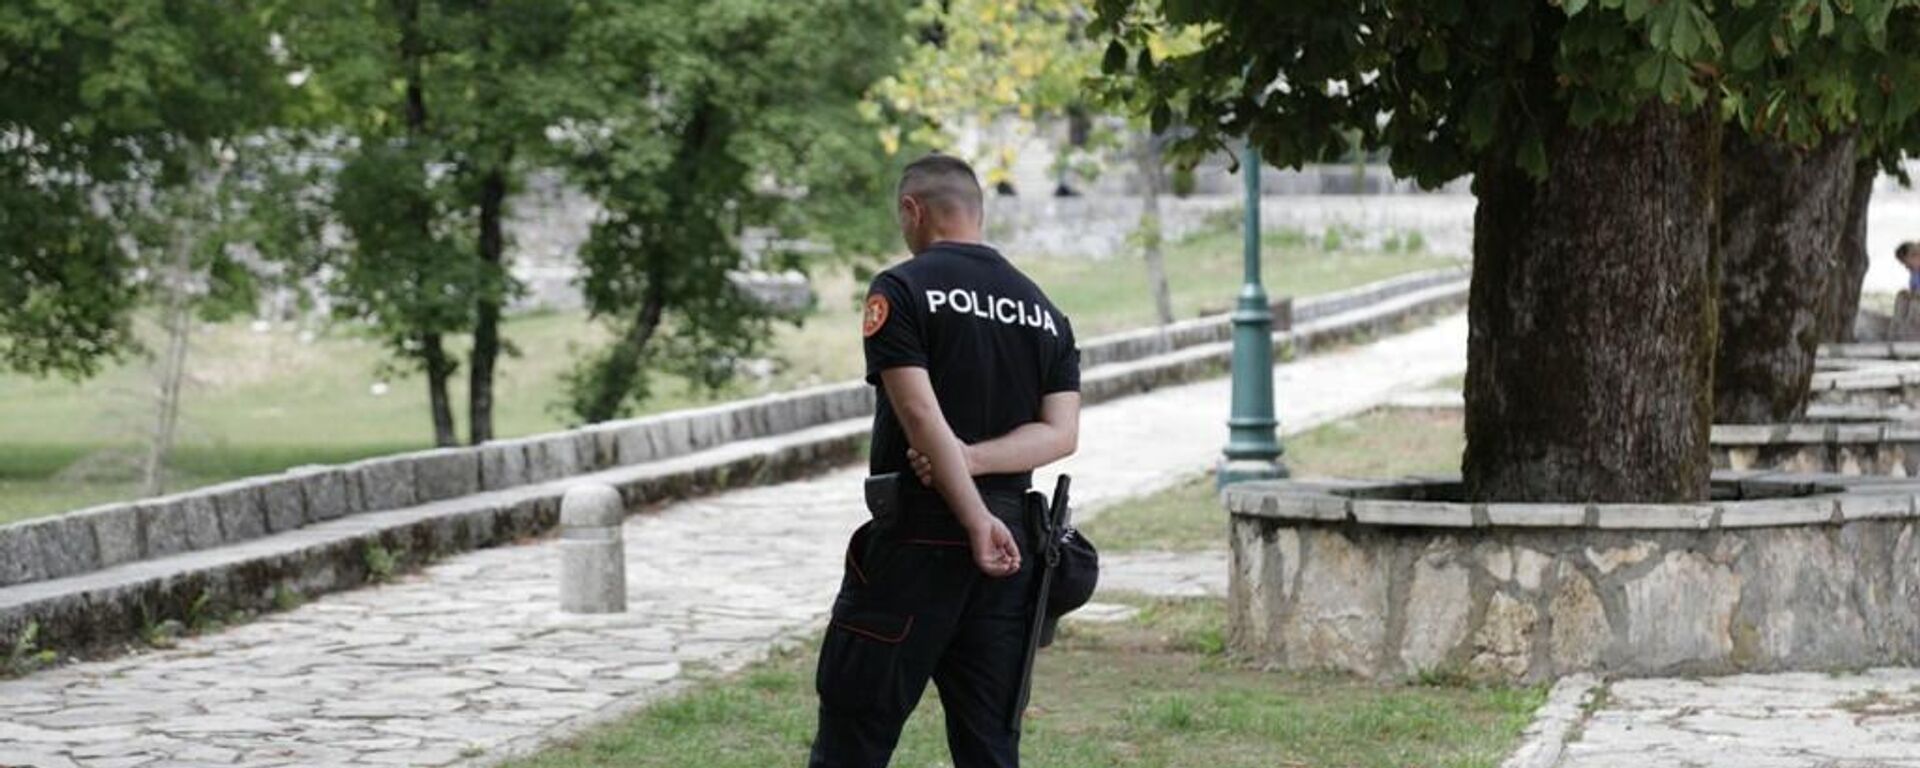 Policija dežura u kompleksu Cetinjskog manastira - Sputnik Srbija, 1920, 08.09.2021